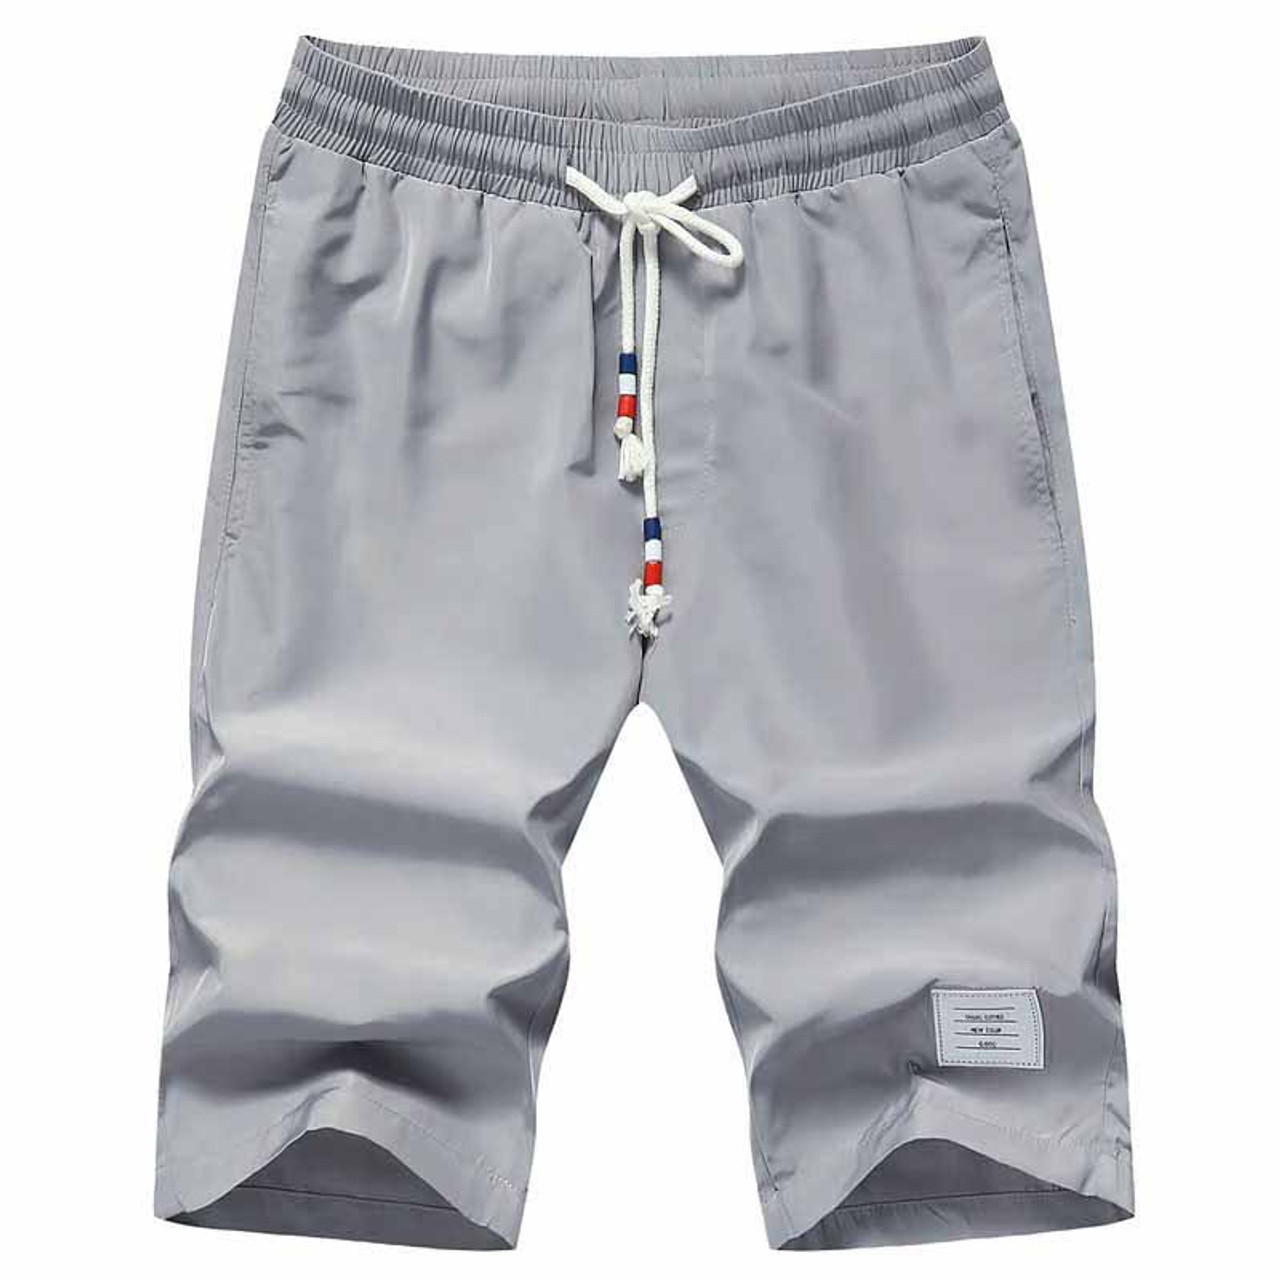 Grey short casual label print elastic waist | Mens shorts online 1007MP